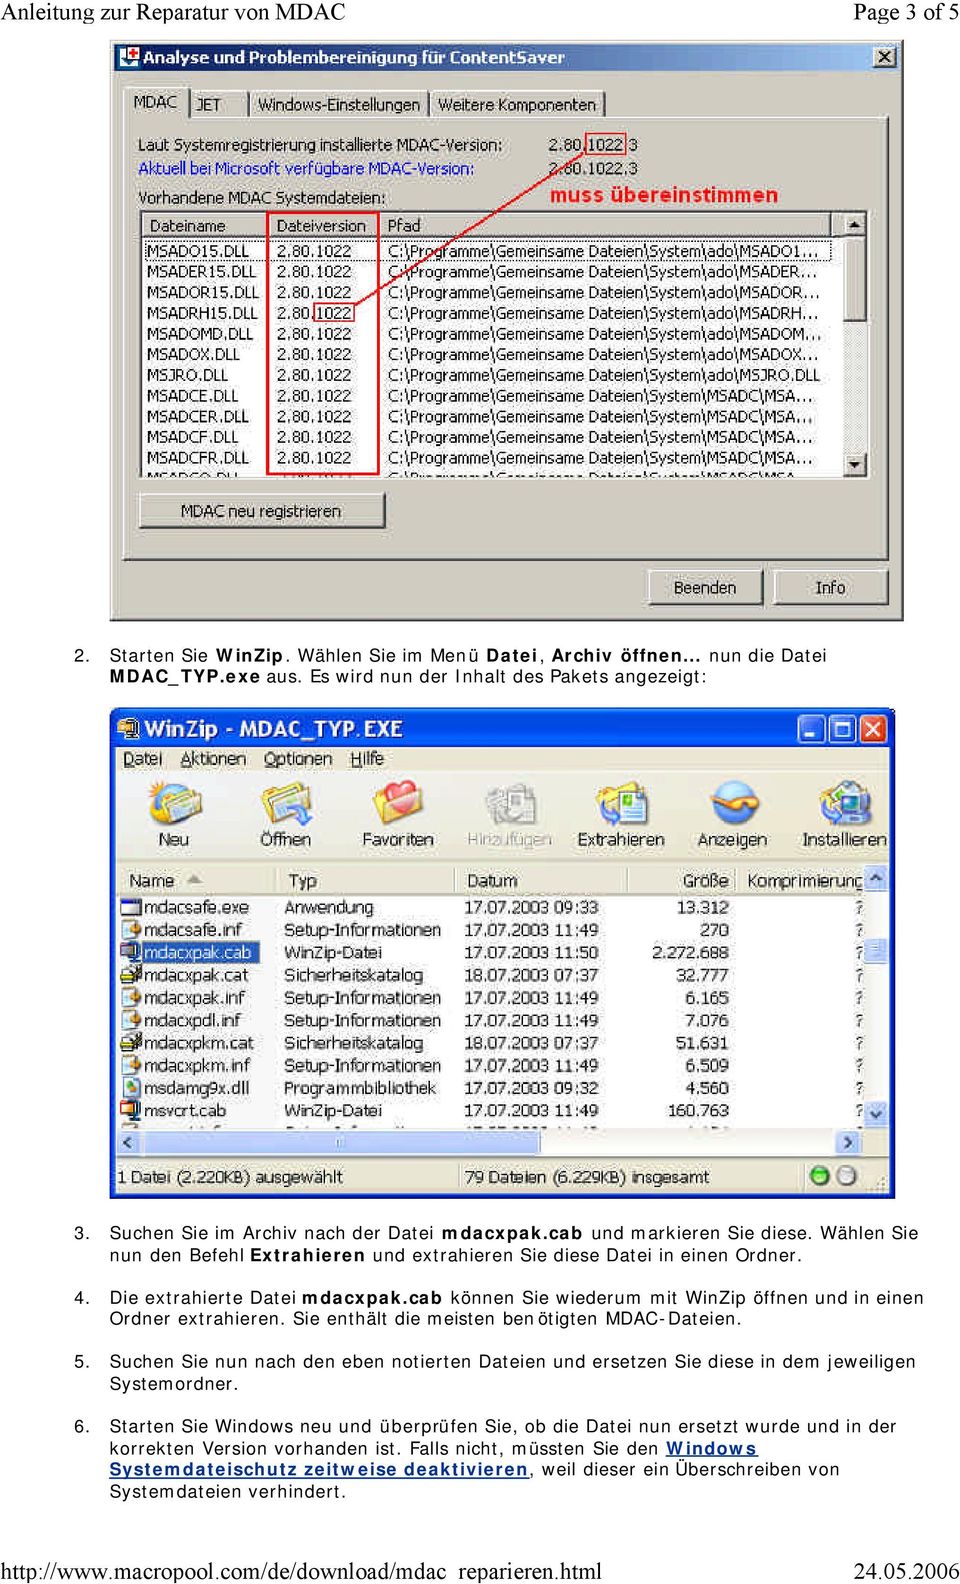 cab können Sie wiederum mit WinZip öffnen und in einen Ordner extrahieren. Sie enthält die meisten benötigten MDAC-Dateien. 5.